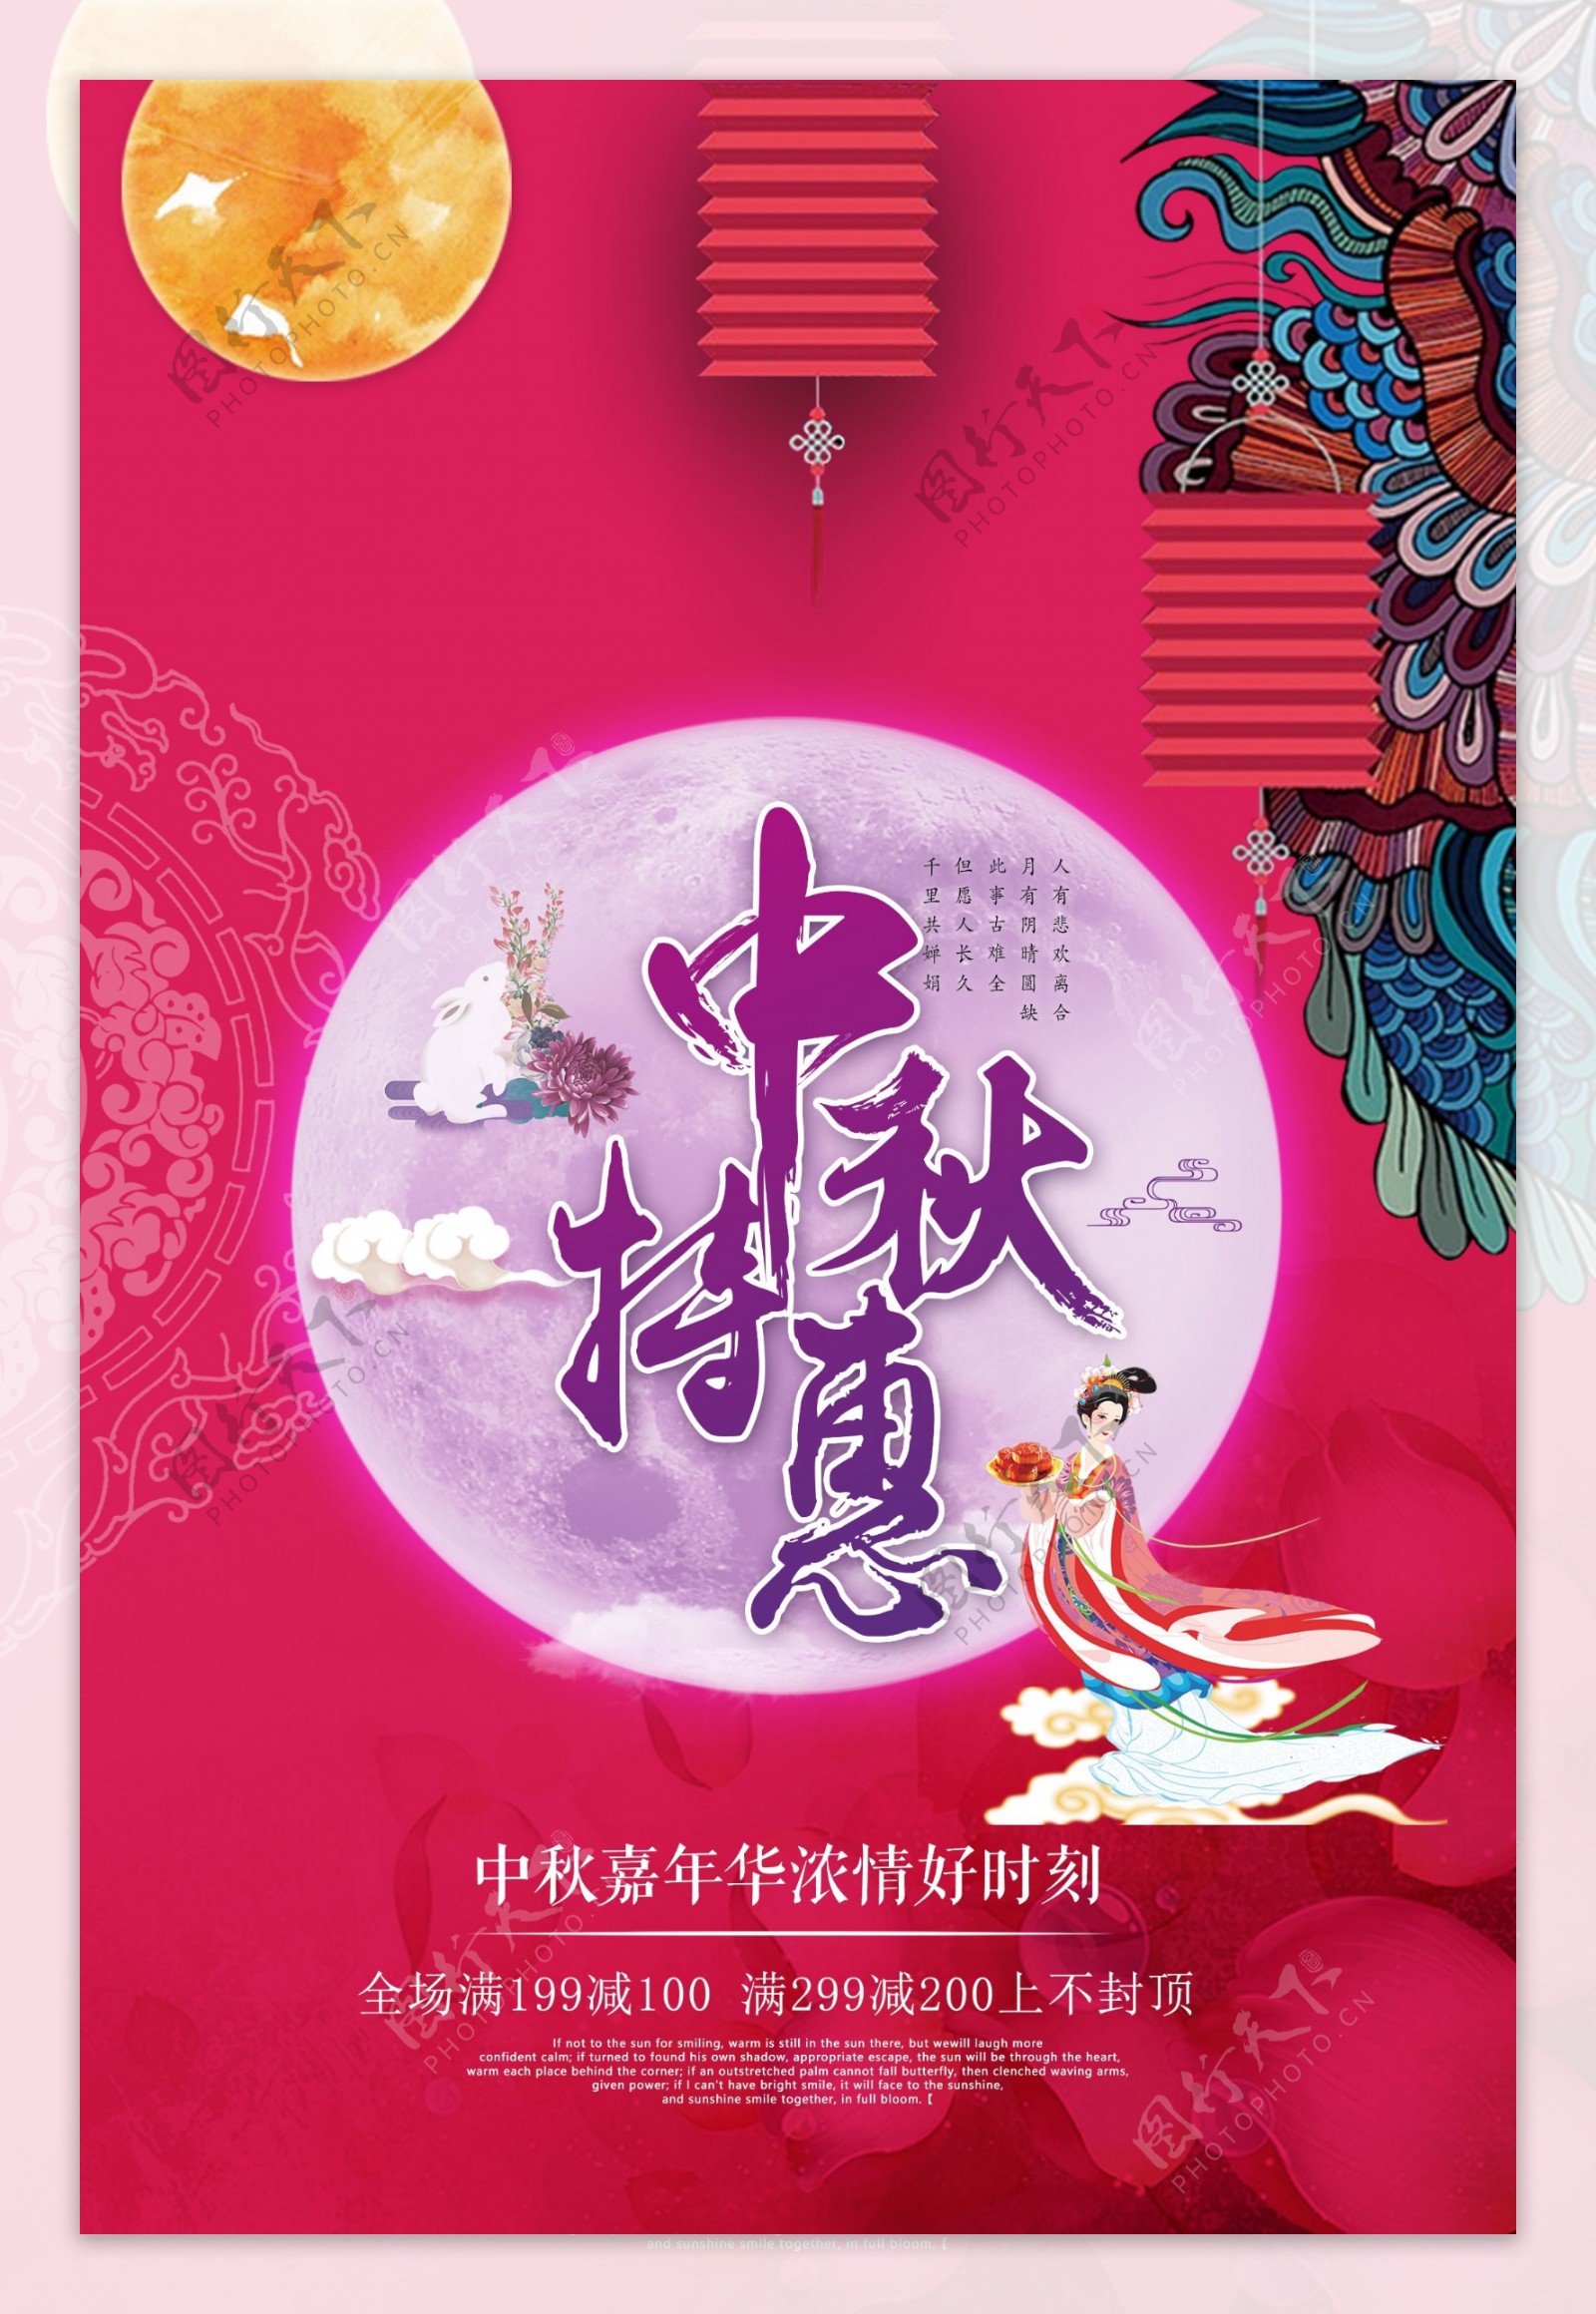 中秋佳节节日促销海报设计